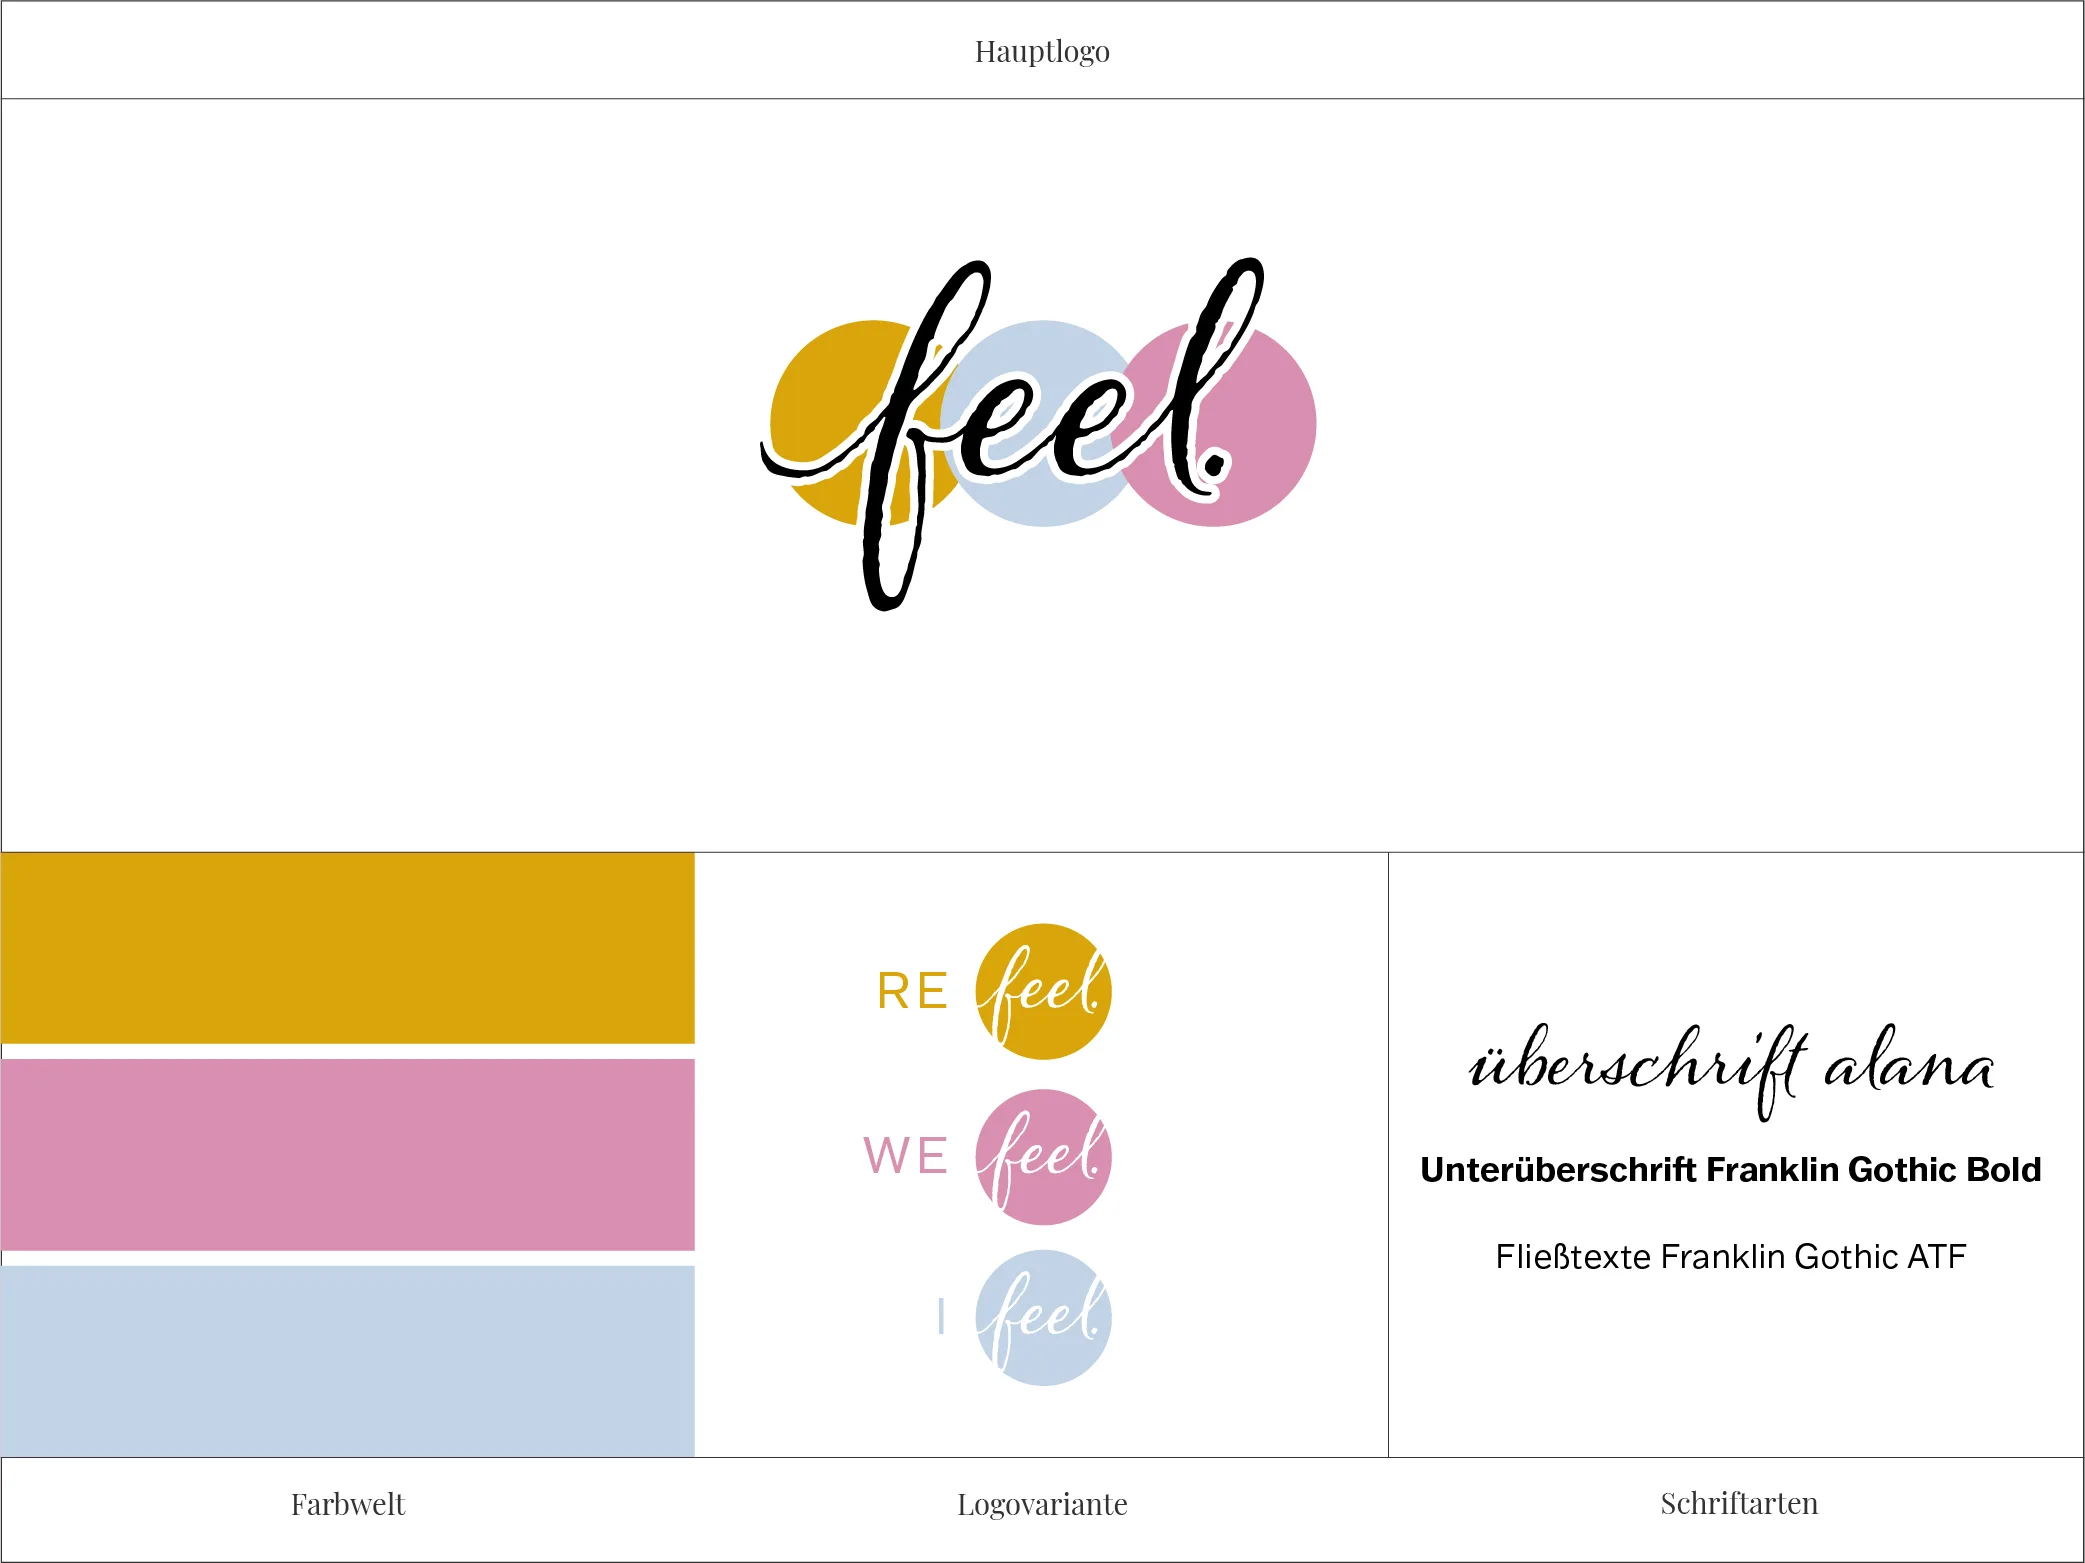 Logo von Kathrin Backofen mit ihrem Unternehmen "Feel." mit den ausgewählten Markenfarben, Schriftarten und einer Logovariante